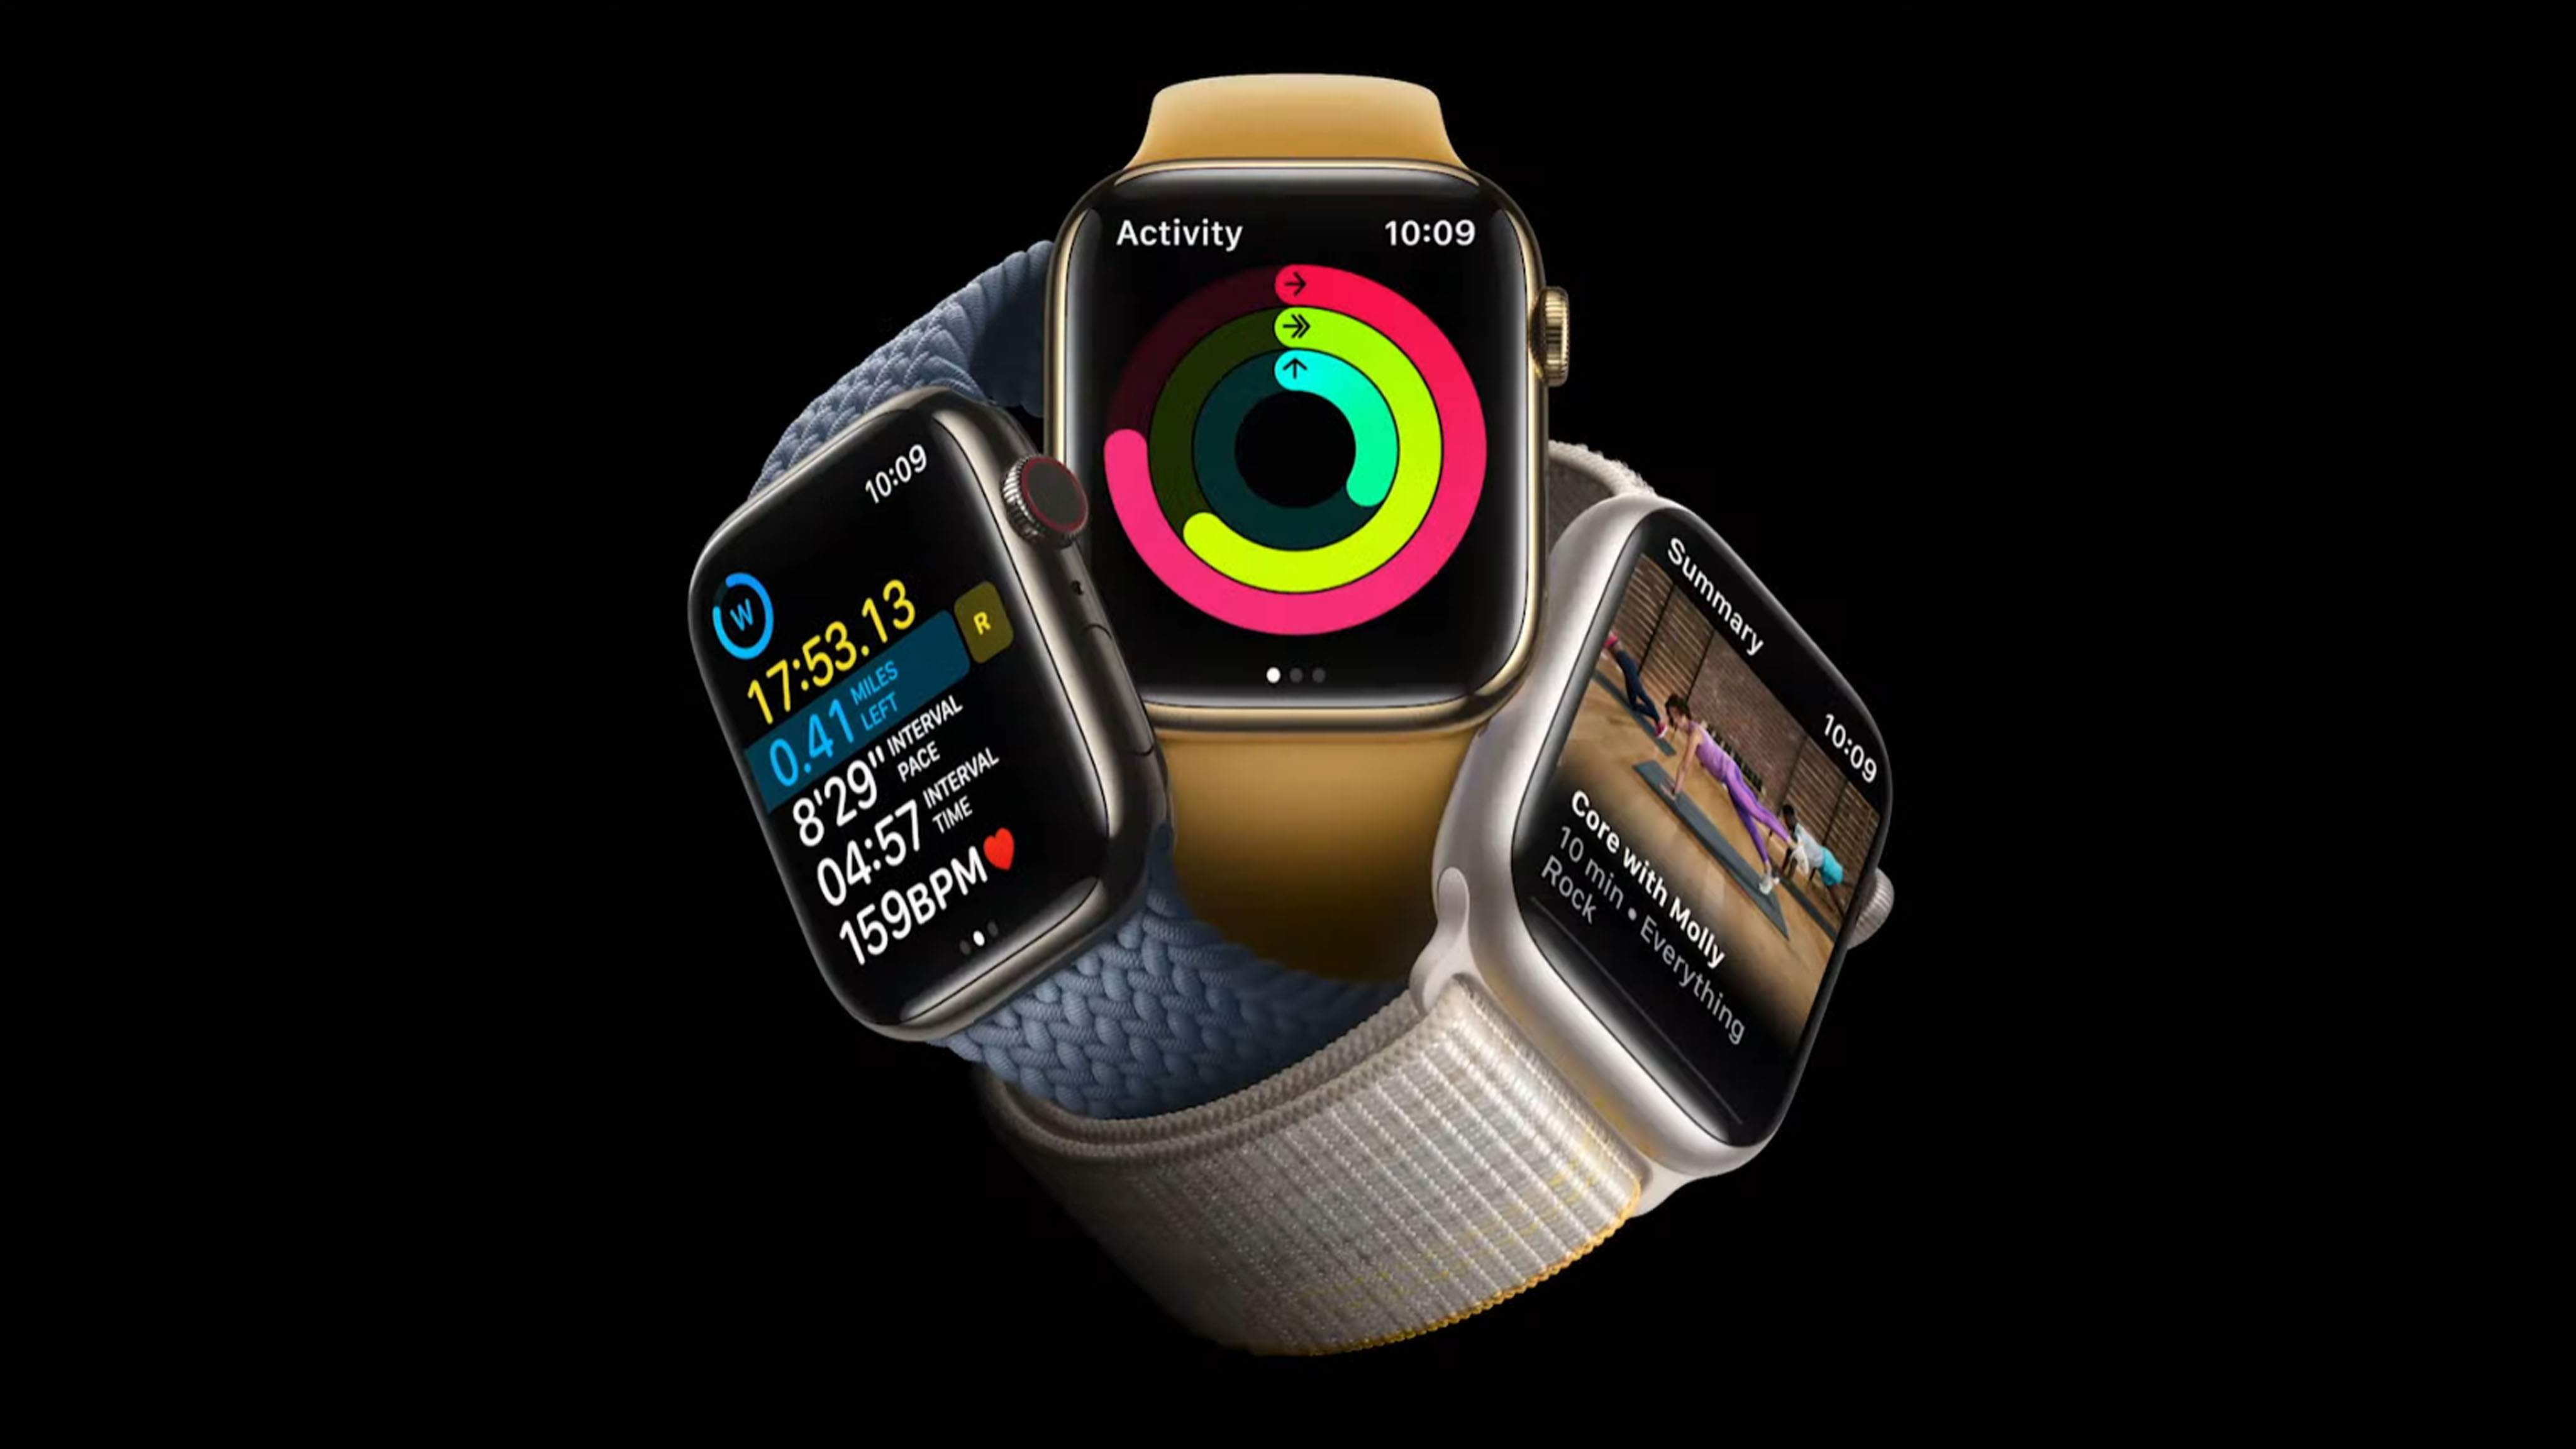 El Apple Watch Series 8 aprendió a medir la temperatura corporal y a detectar accidentes. Precio - desde 400 dólares